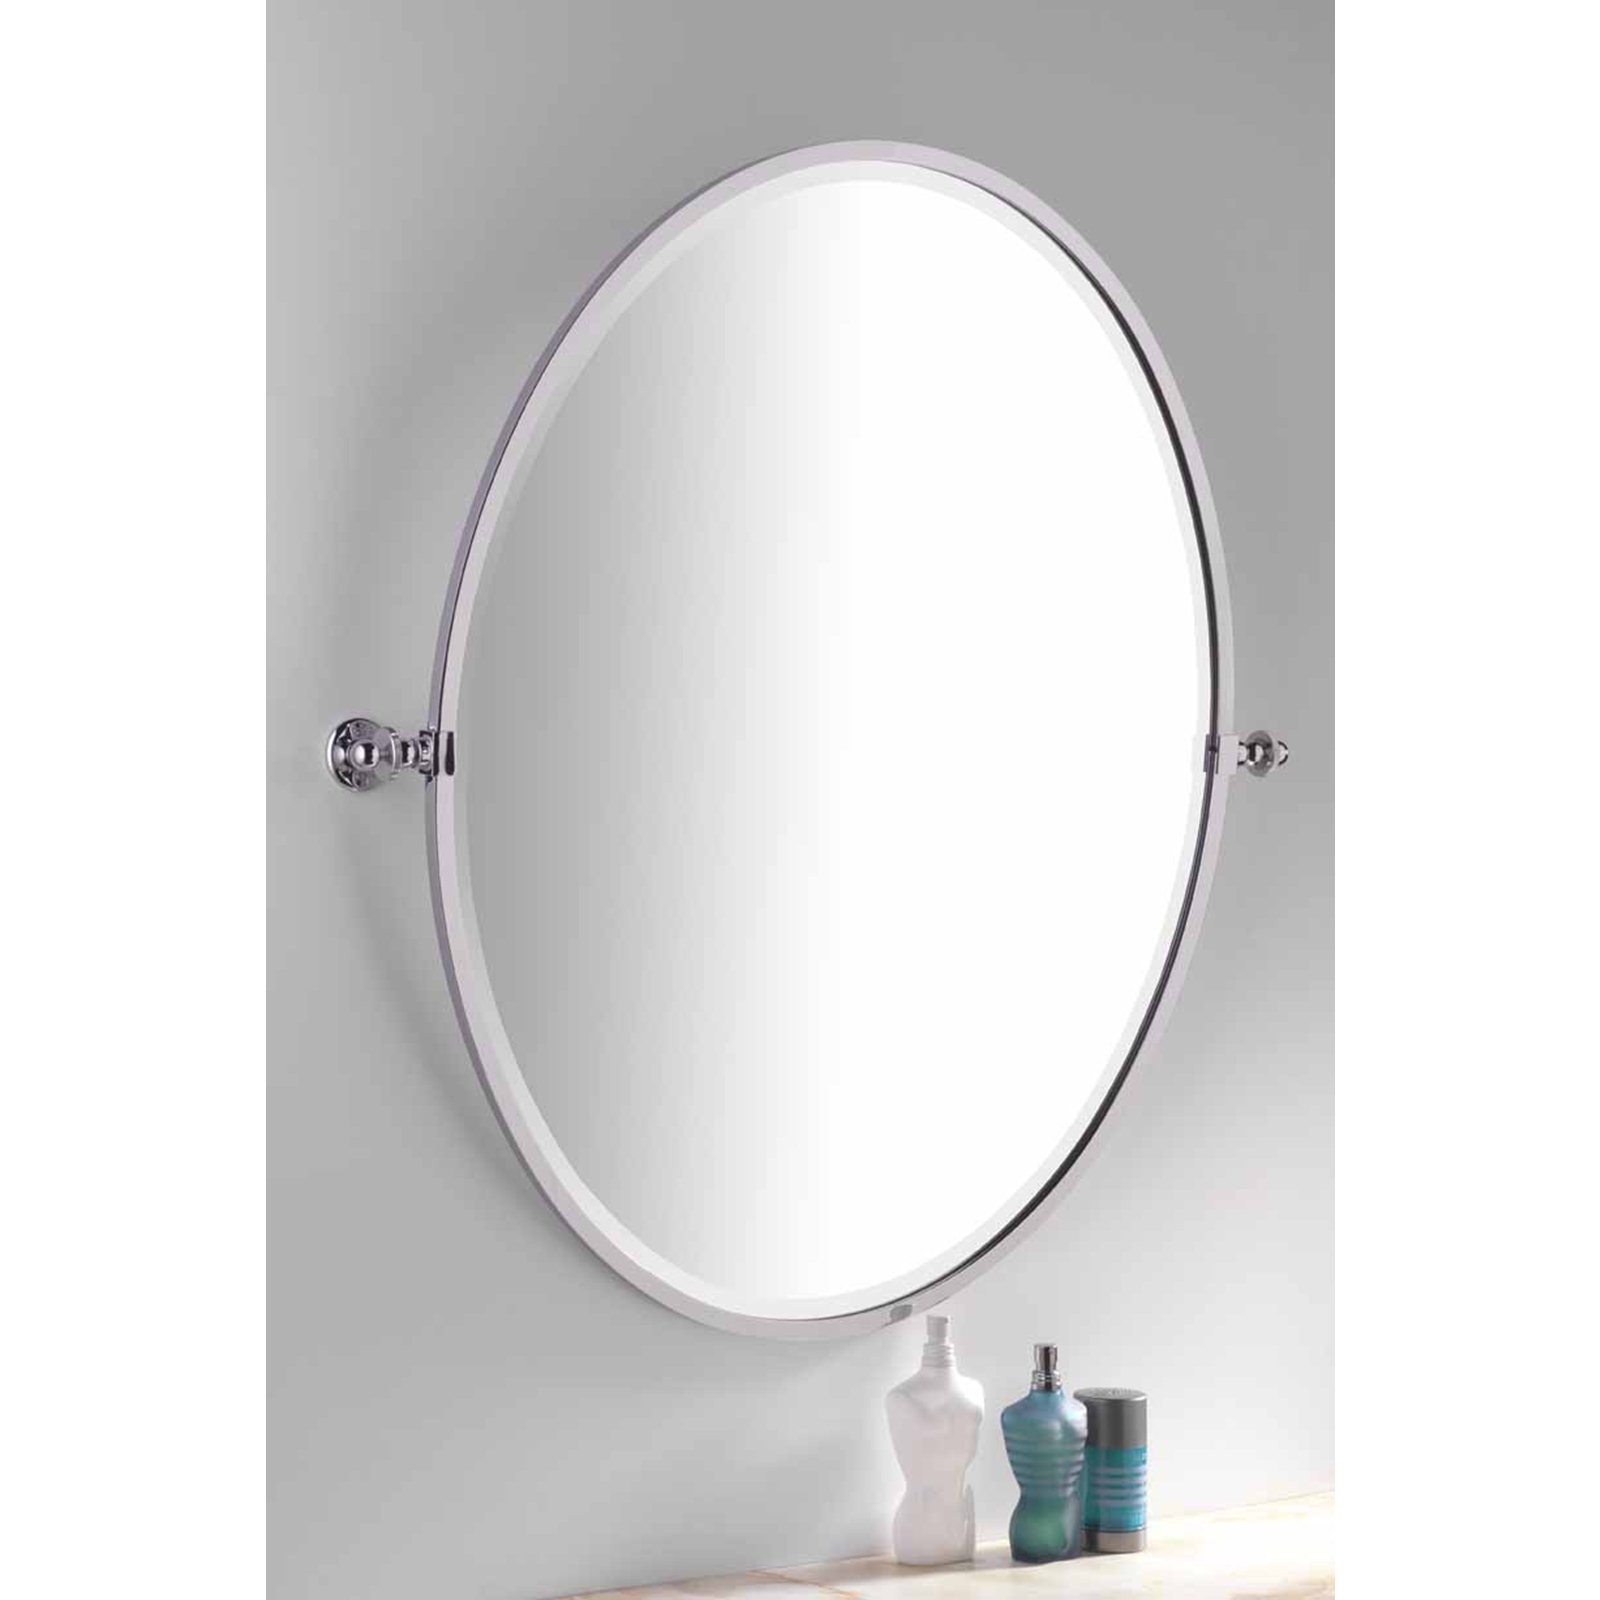 Tilting Bathroom Mirror
 Handmade Bathroom Oval Framed Tilting Mirror